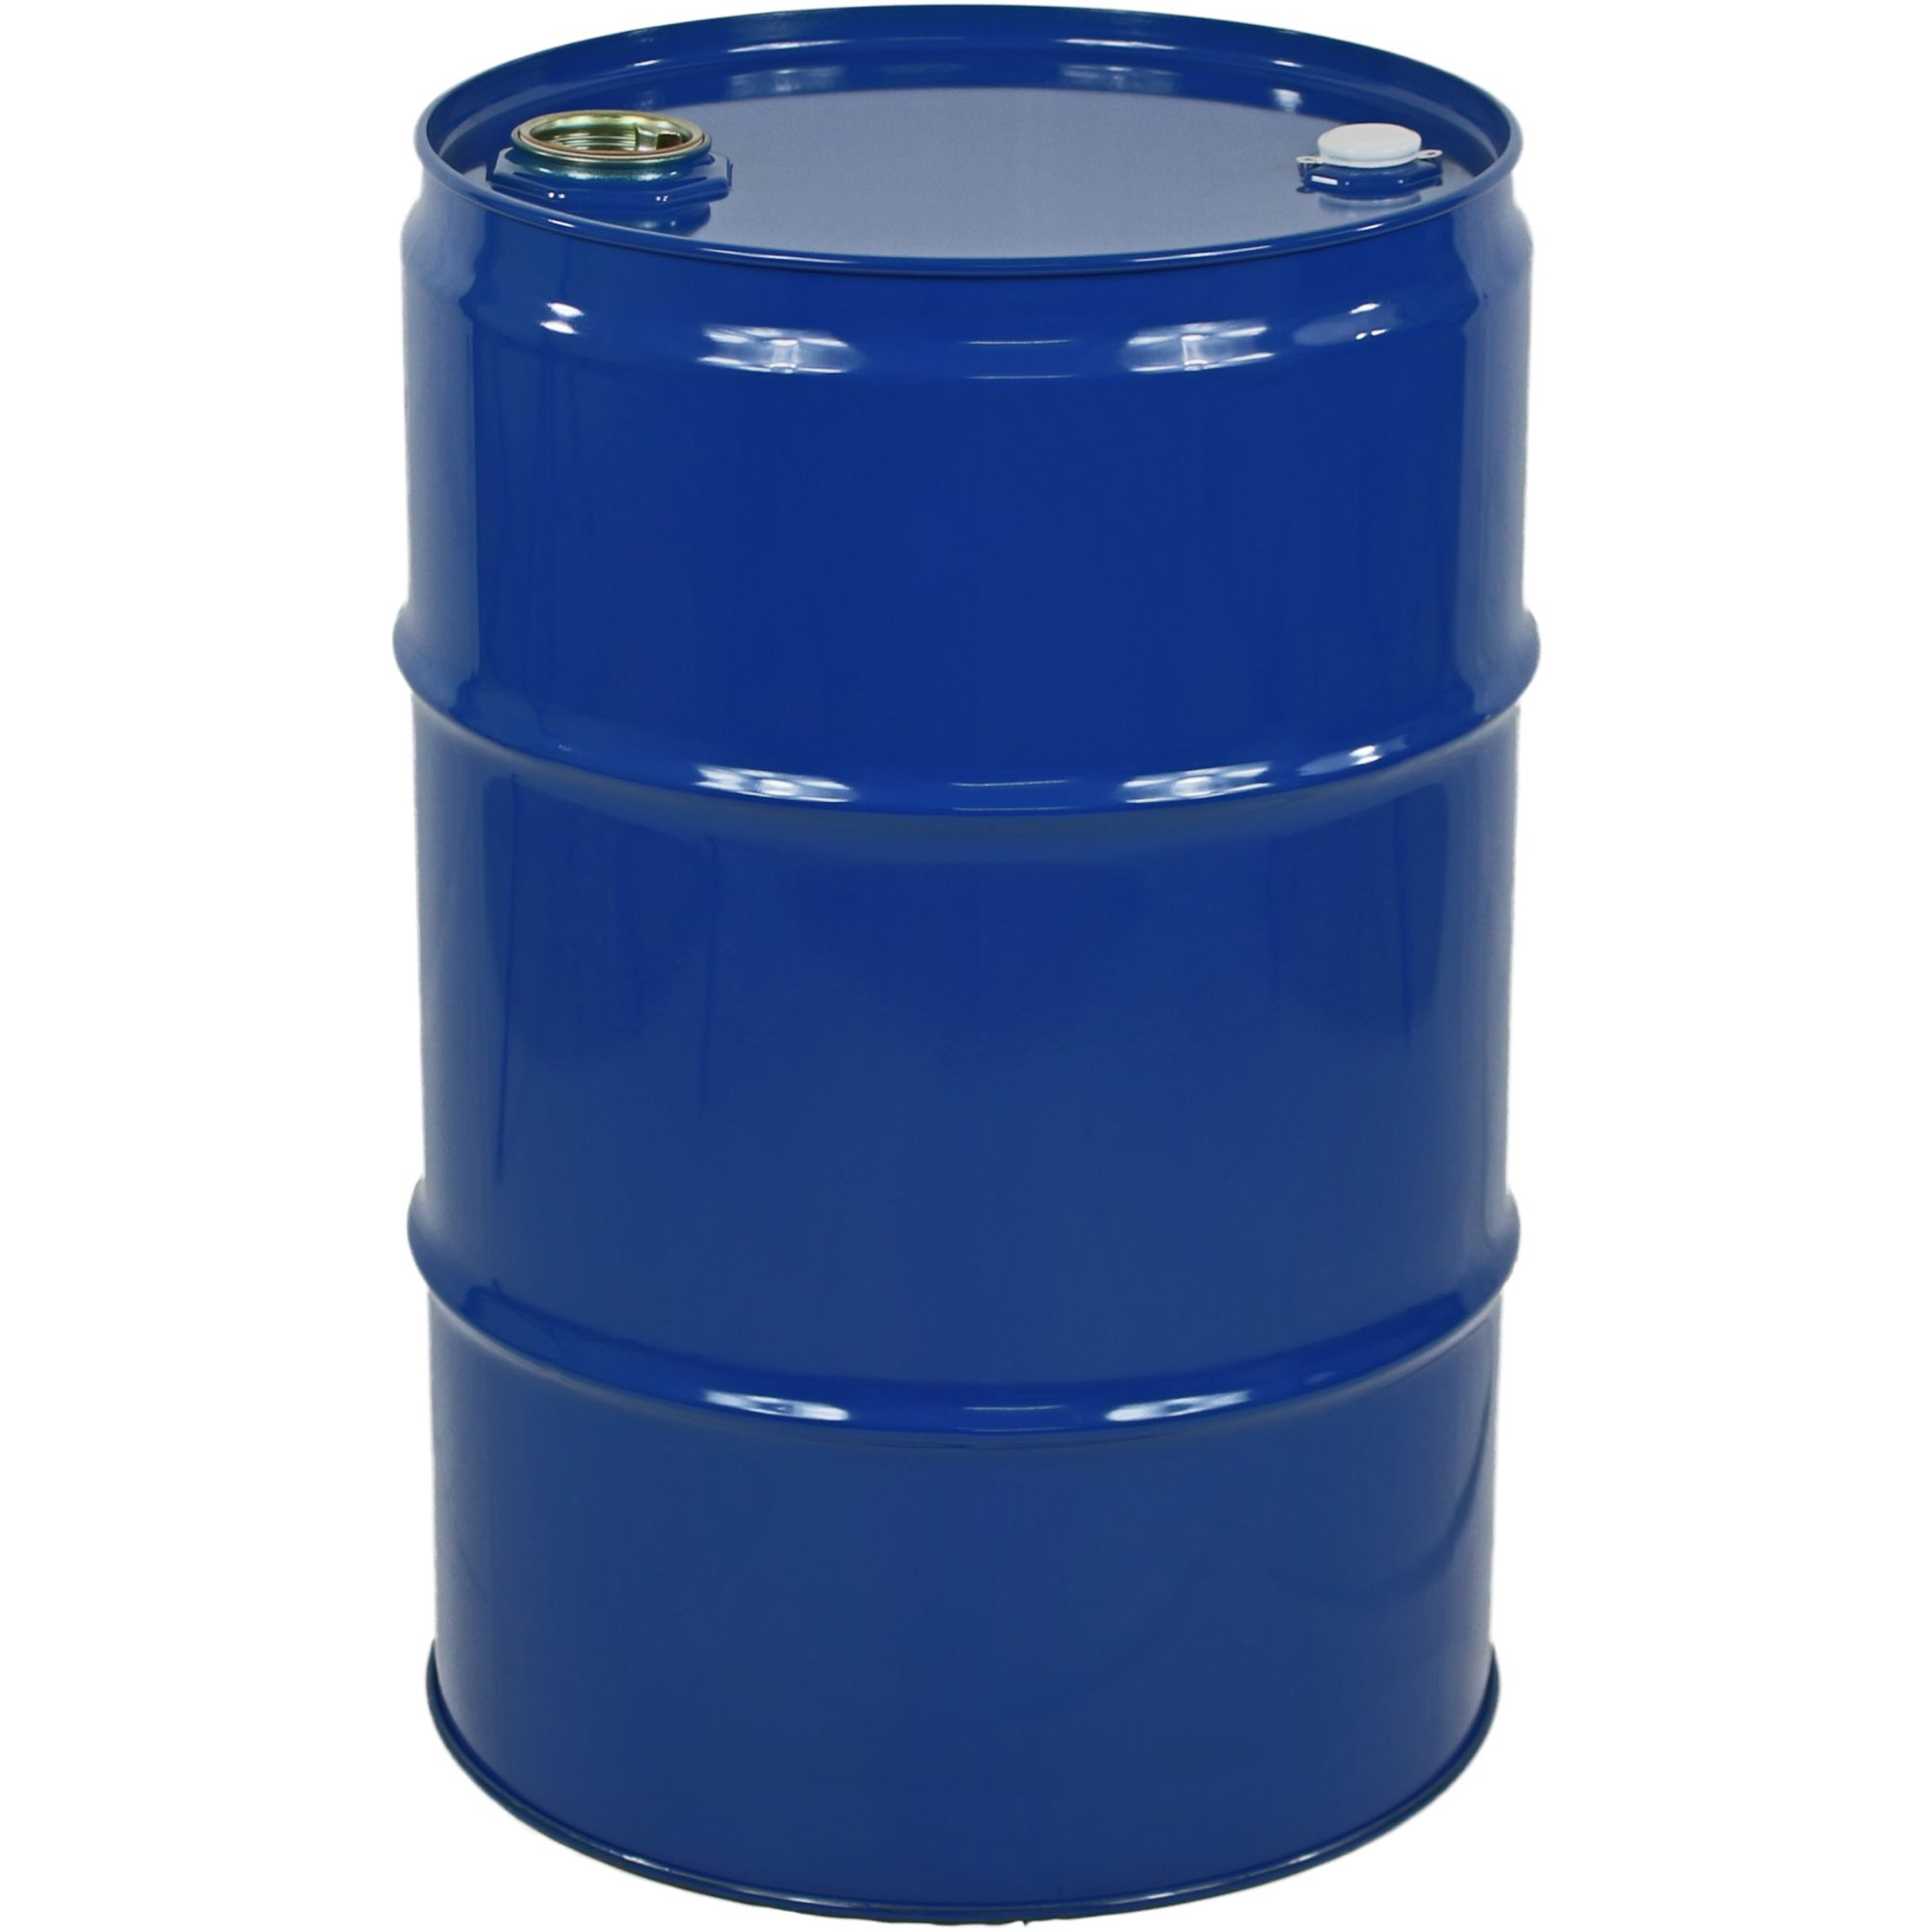 Garagenfass 64,0 Liter